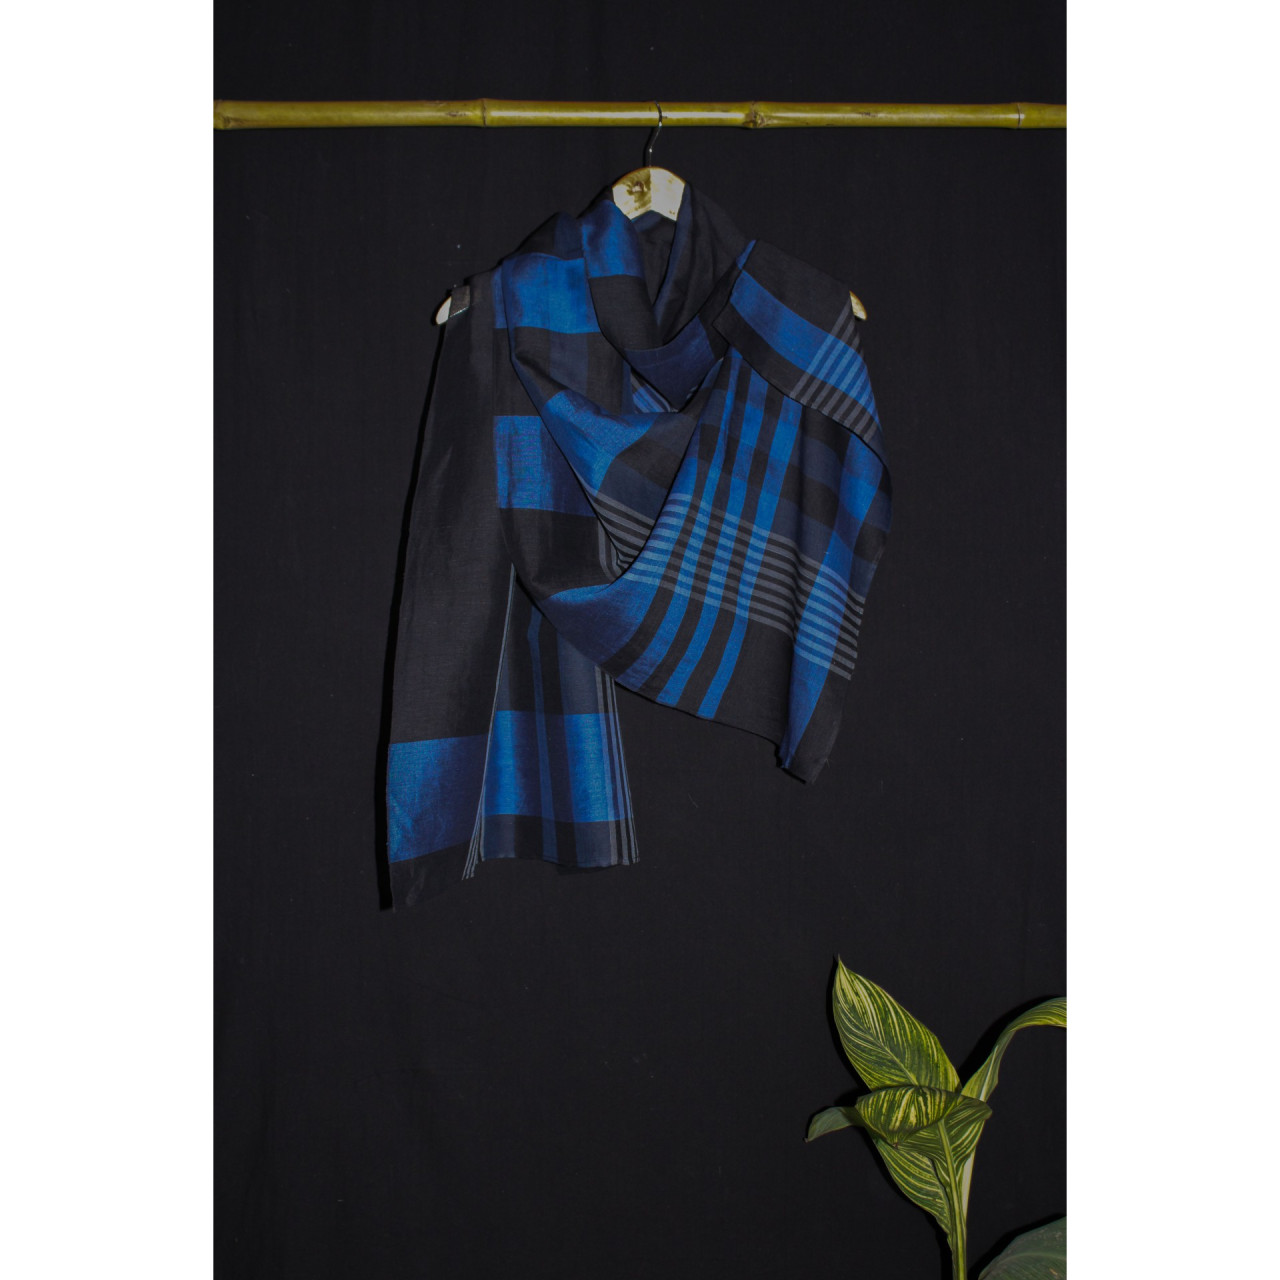 (2073) Khadi  and linen Azo-free dyed stole from Shantipur - Indigo, black, blue, white, stripes, plain